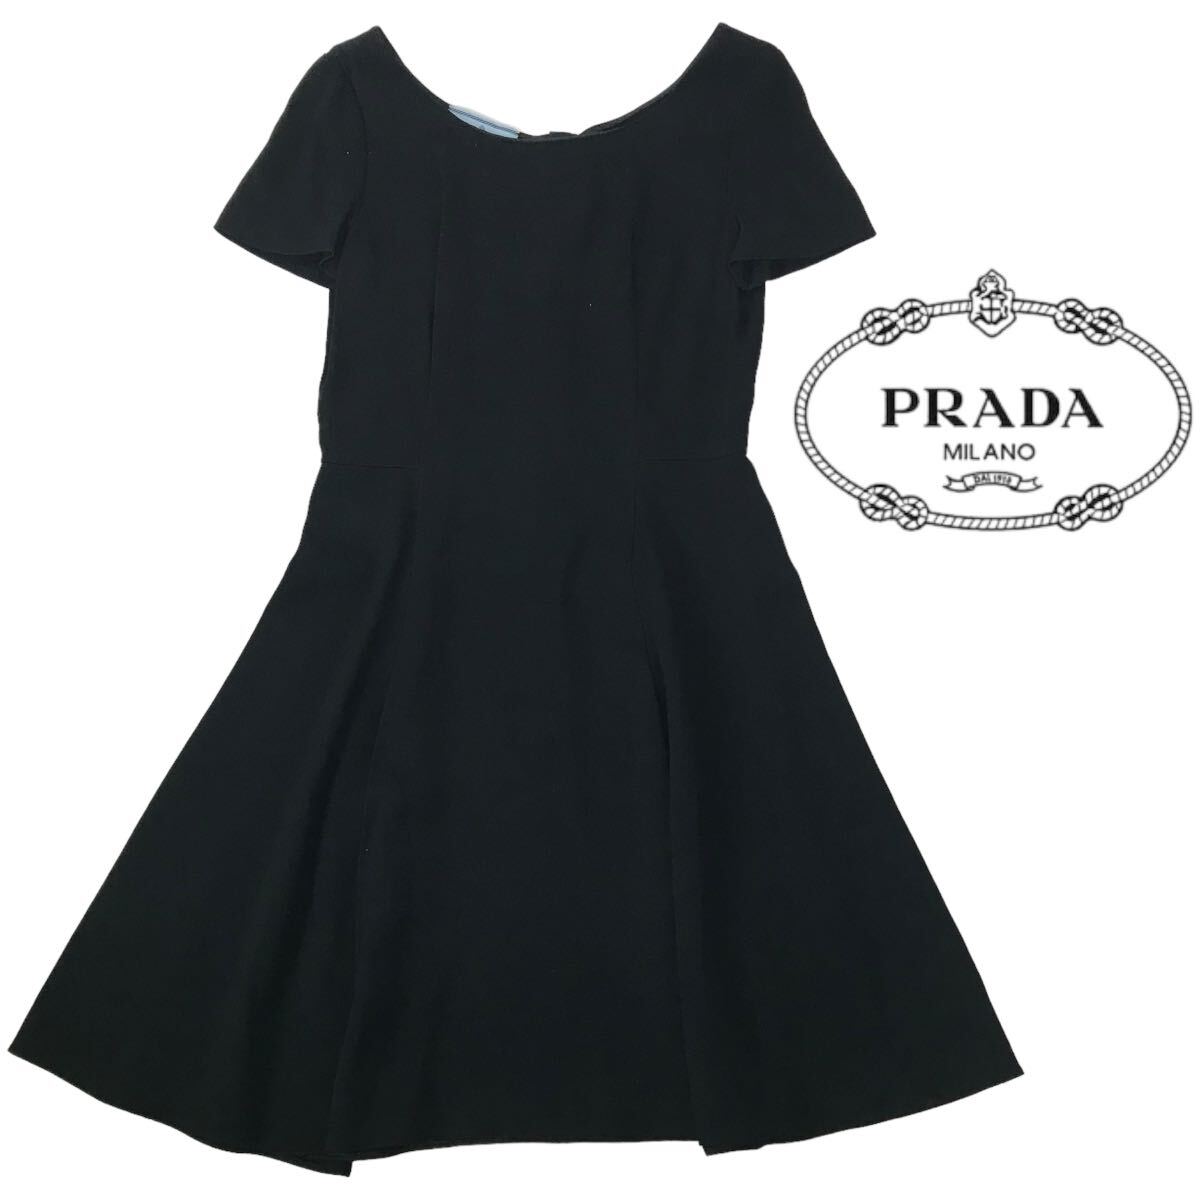 j183 良品 PRADA プラダ 2014 半袖 ワンピース フォーマル ドレス ブラック 黒 42 レディース 正規品の画像1